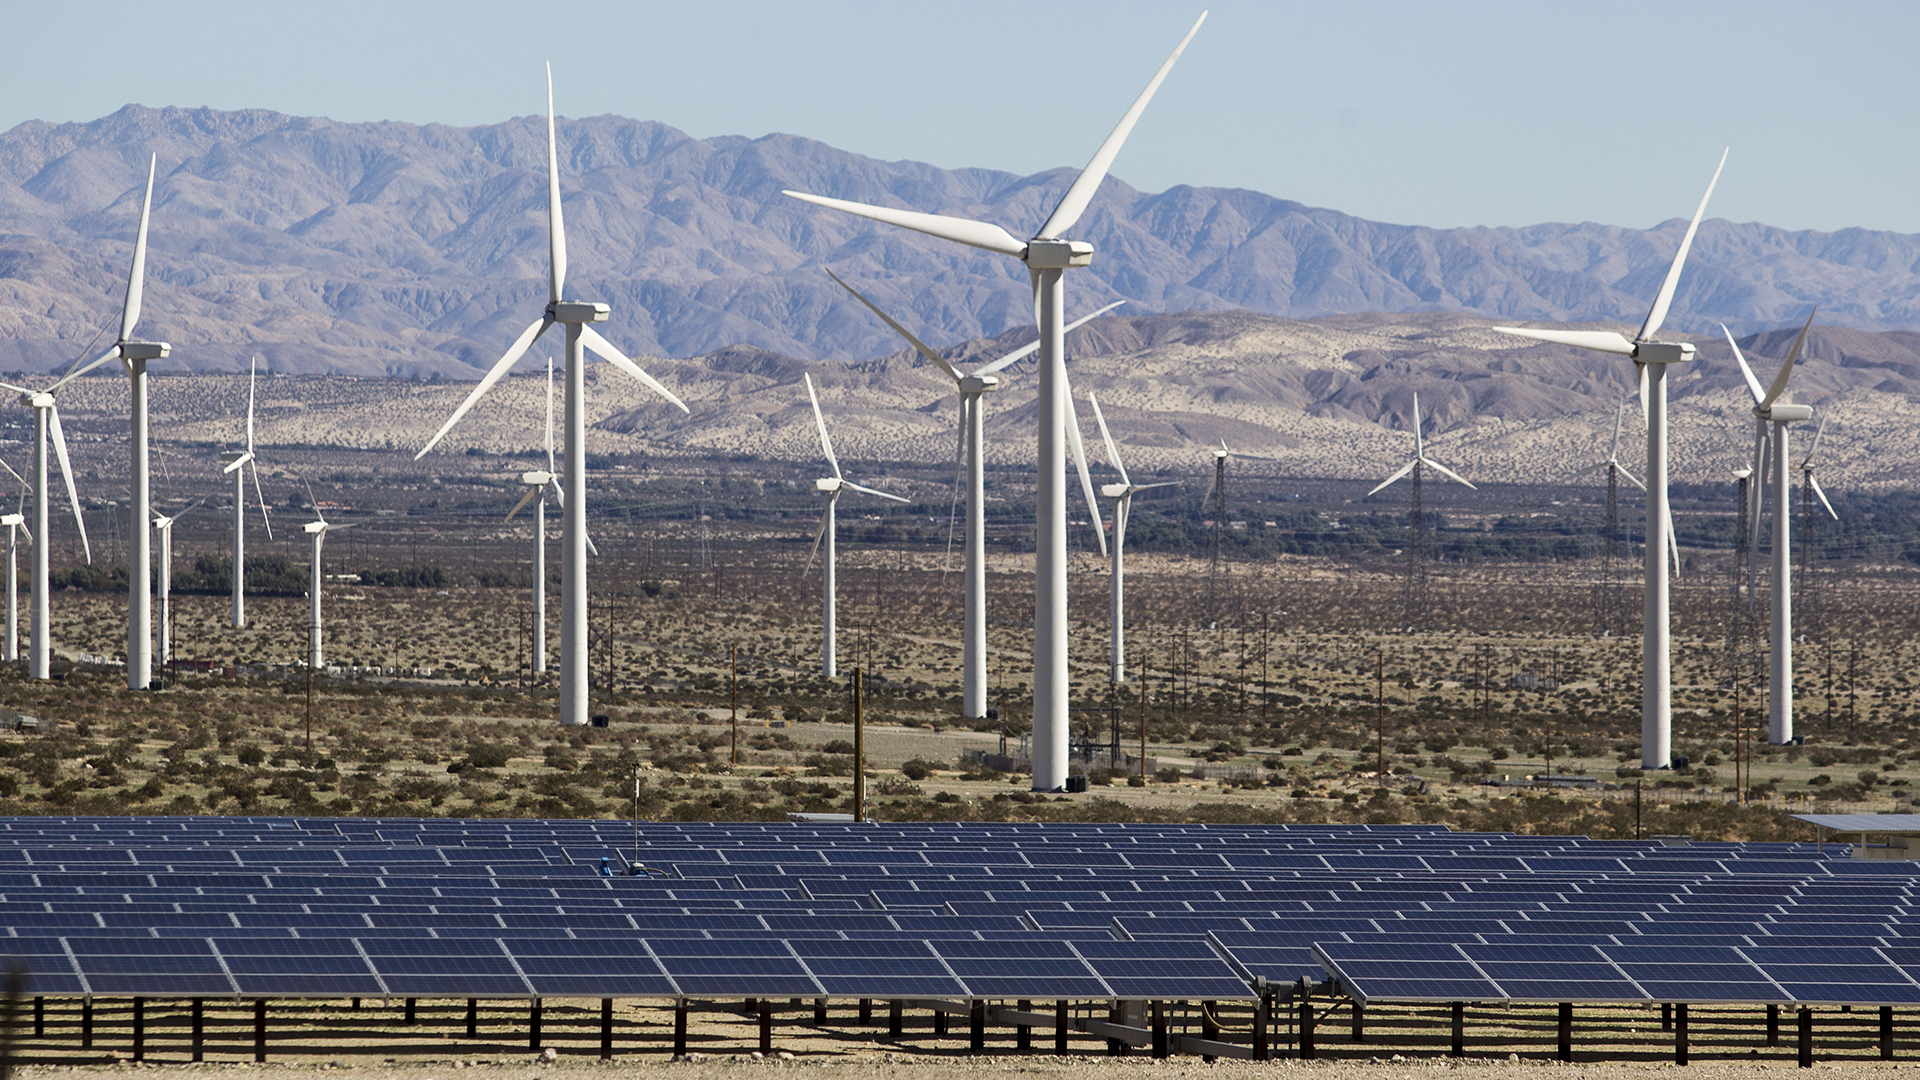 Windräder und Solarzellen sind im Morongo Valley (Kalifornien, USA) zu sehen. | picture alliance / ZUMAPRESS.com